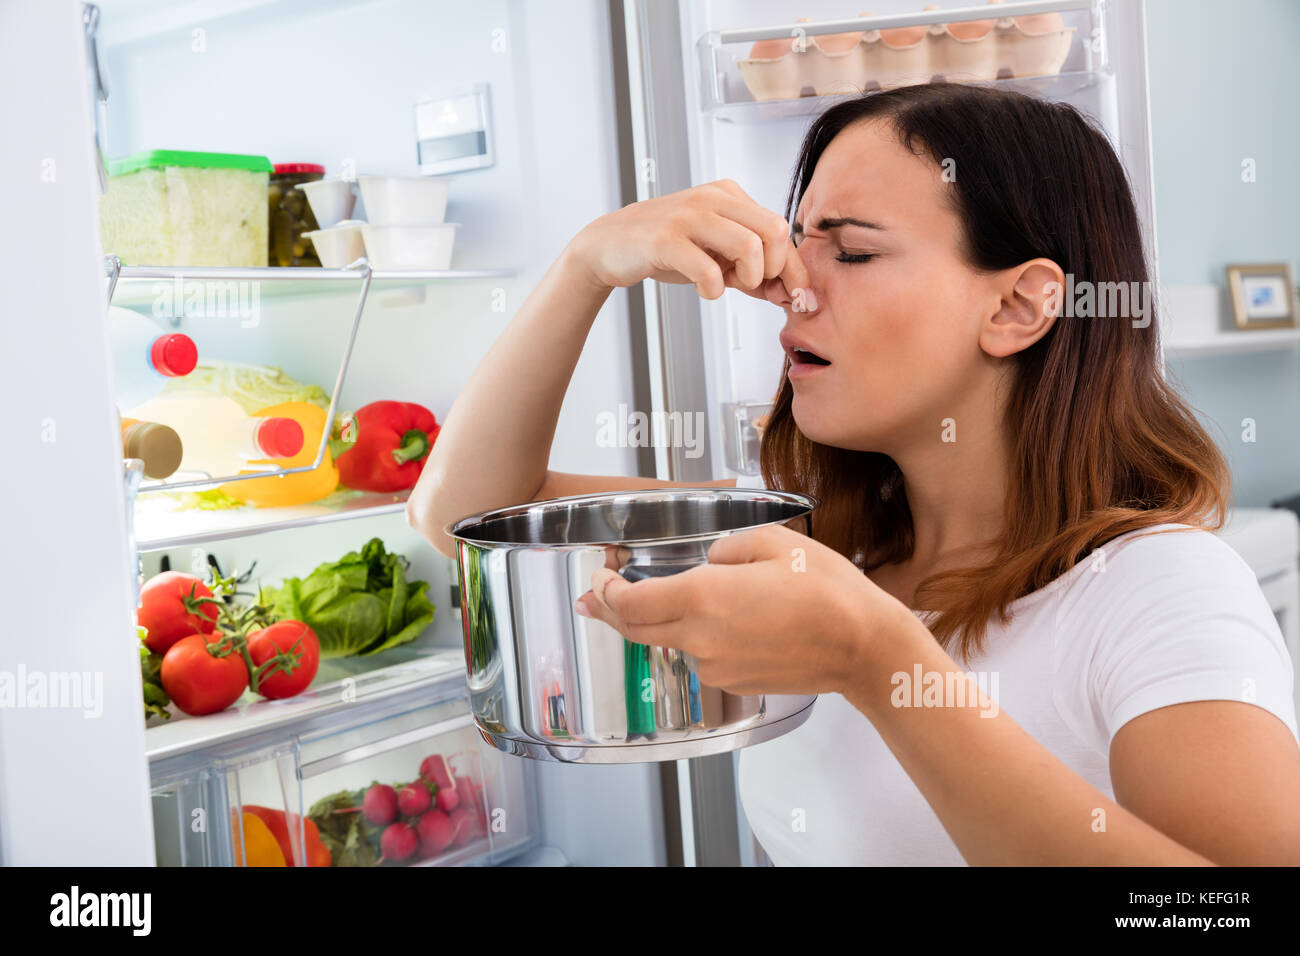 Jeune femme a remarqué l'odeur fétide de nourriture à proximité d'une réfrigérateur Banque D'Images